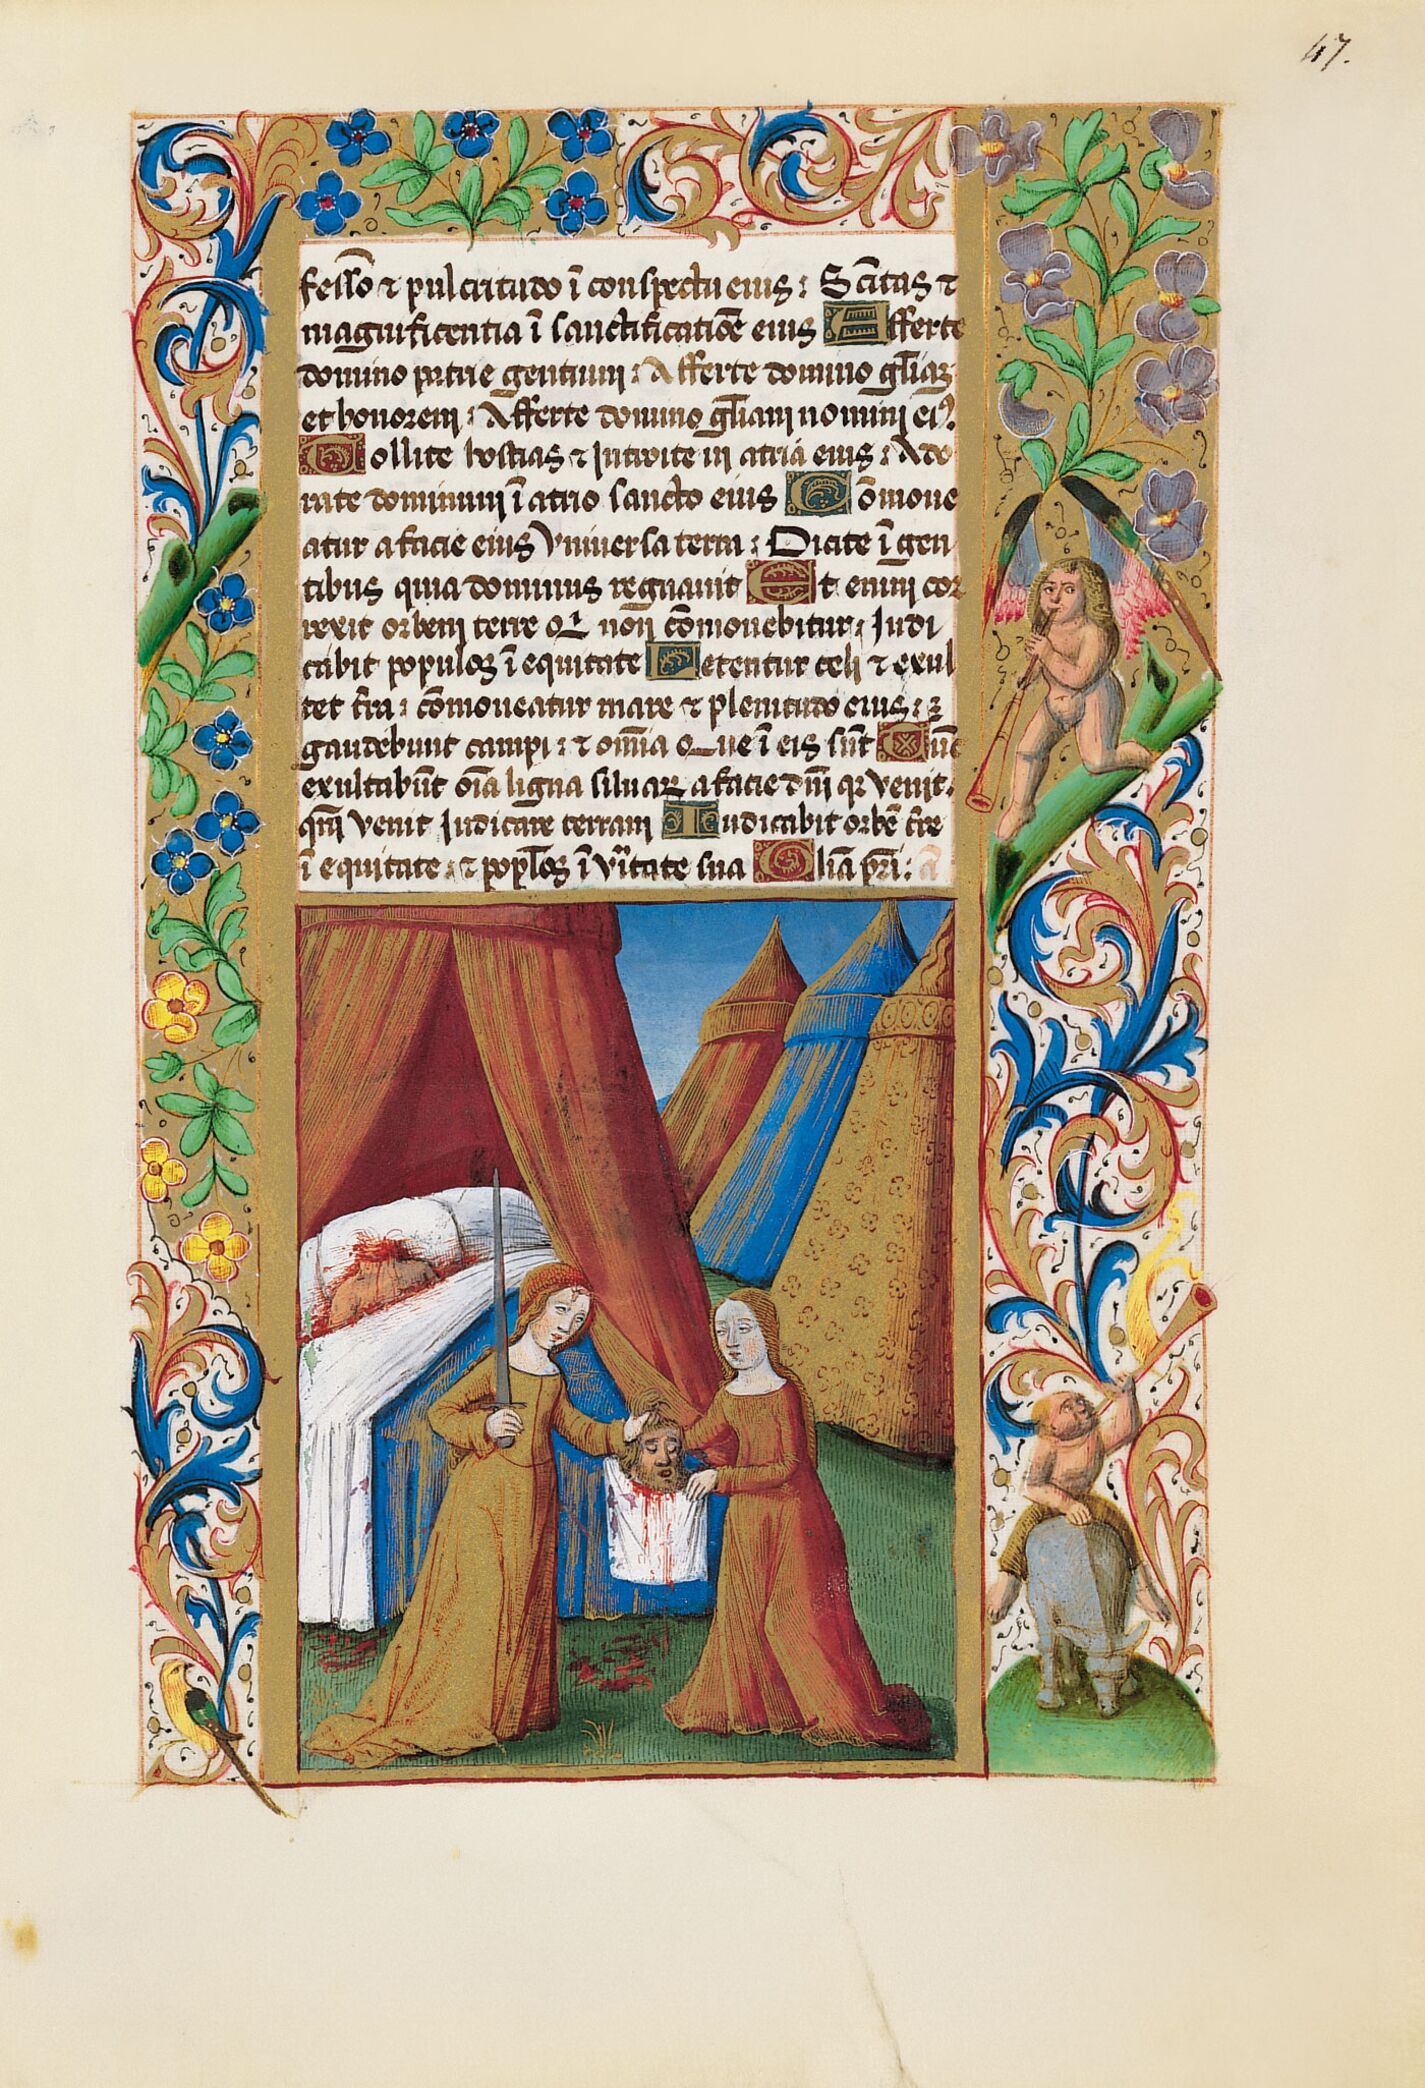 f. 47r, Judit entrega a su criada la cabeza de Holofernes